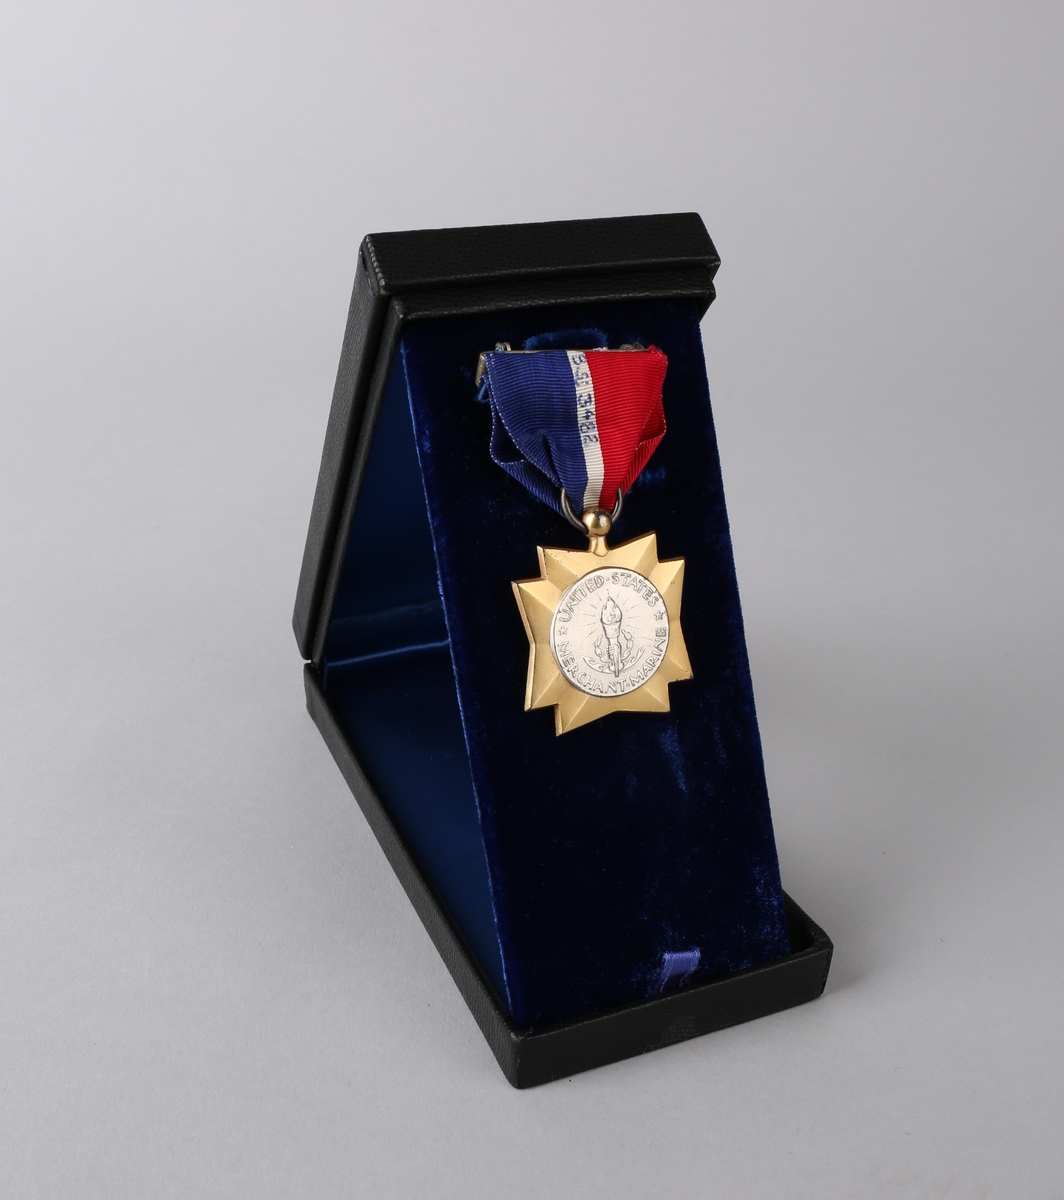 Medaljens forside viser en ørn og et anker. Baksiden har  en fakkel oginskripsjonen "United Statees Merchant Marine"